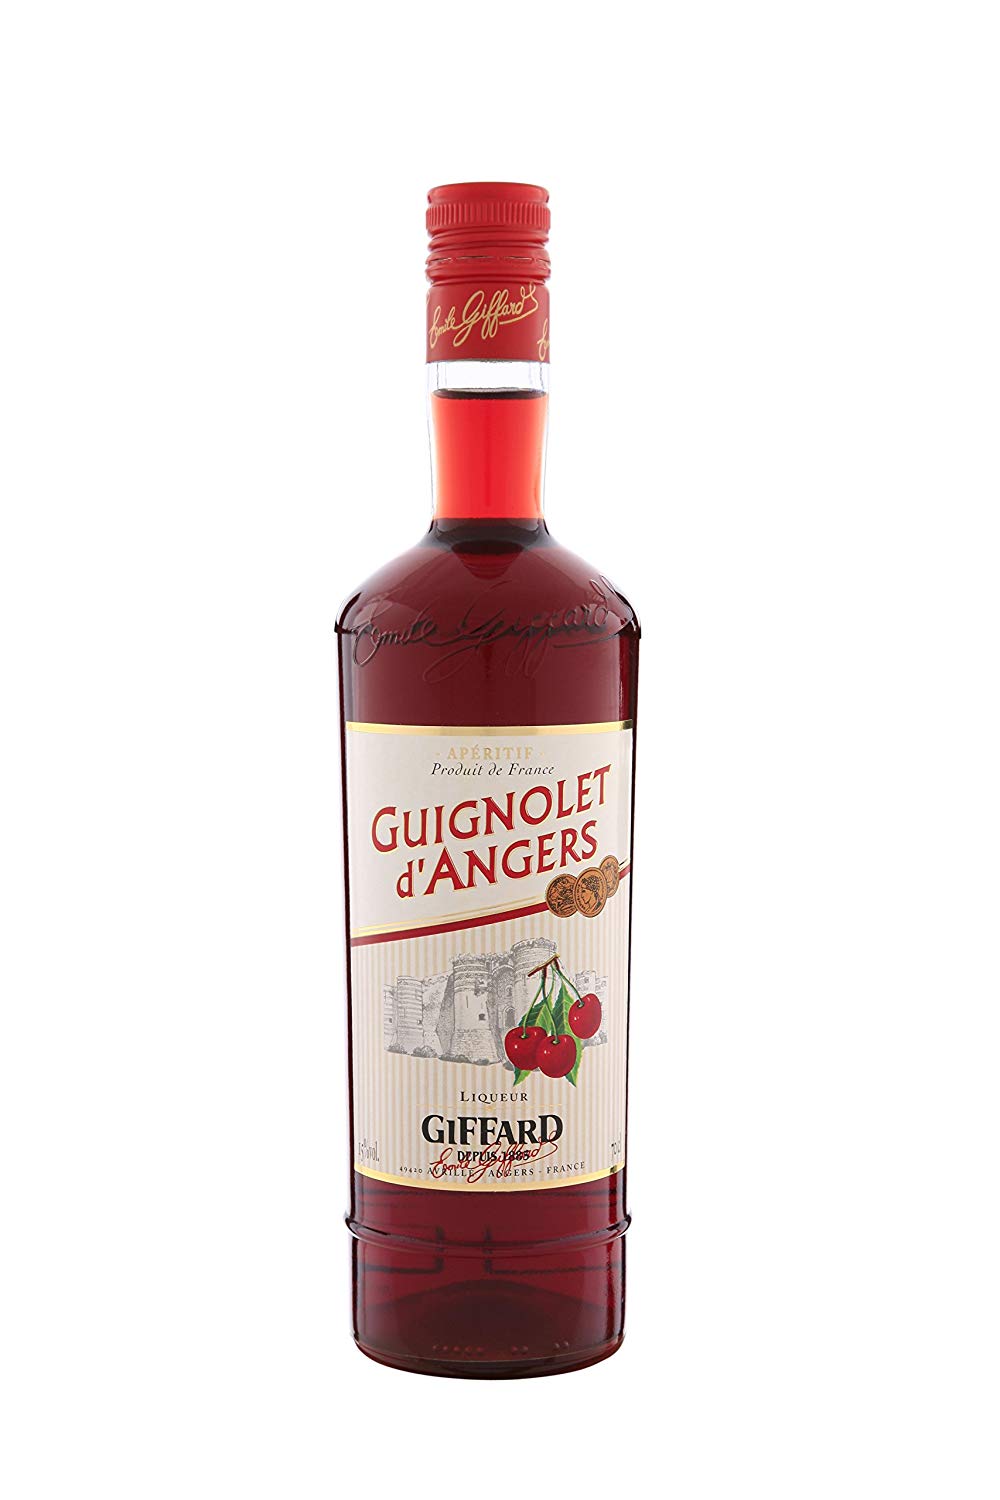  Le liquoriste Giffard fabrique à Avrillé le vrai "Guignolet d'Angers" avec de la guigne de Montmorency.